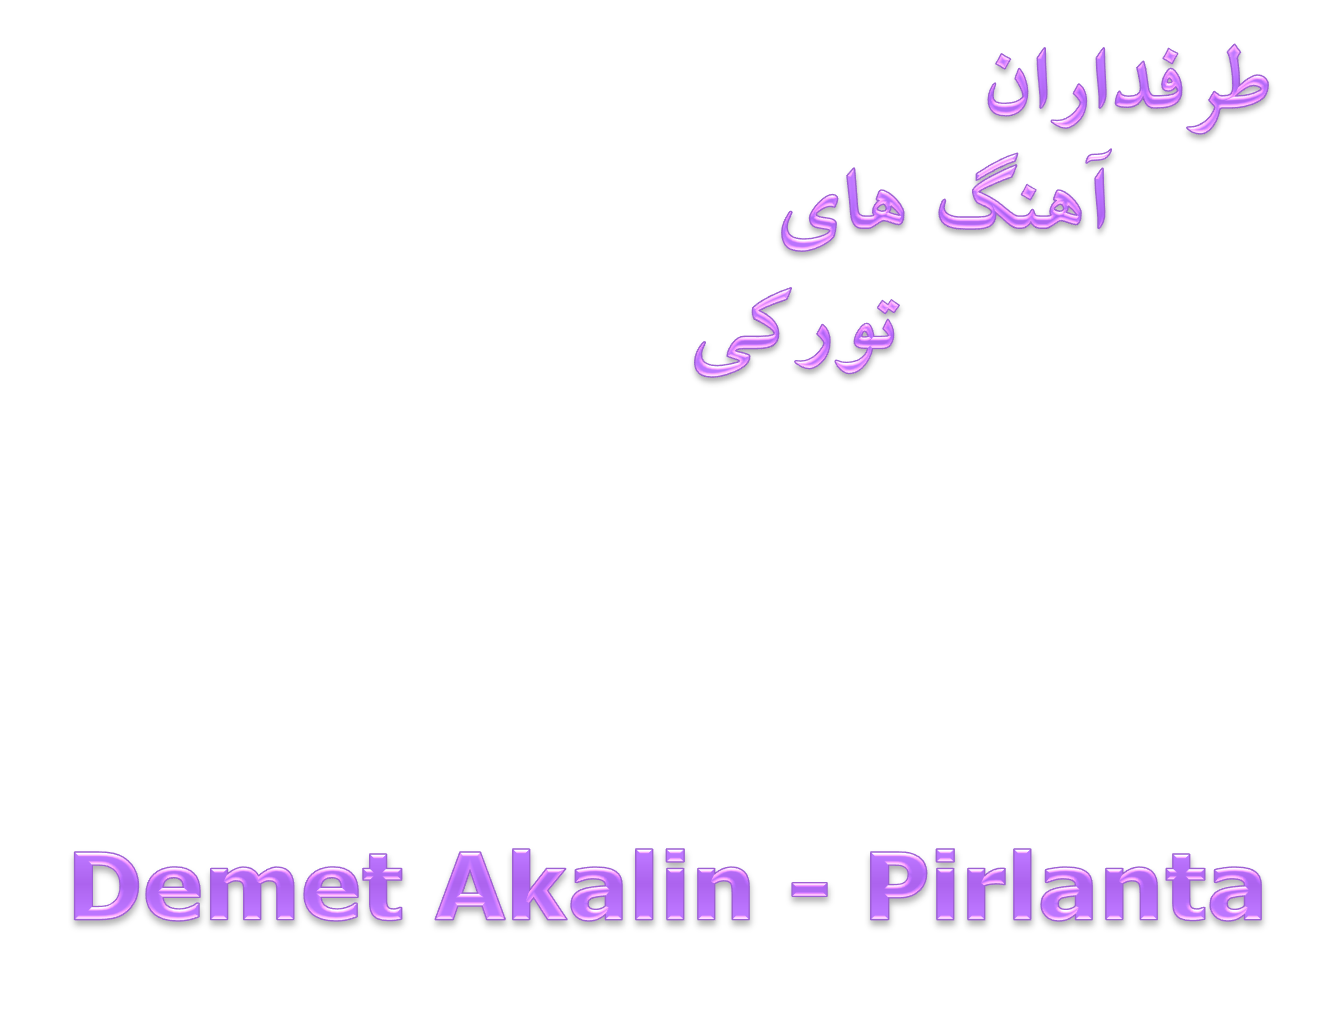 دانلود آلبوم جدید و فوق العاده زیبای Demet Akalin به نام Pirlanta